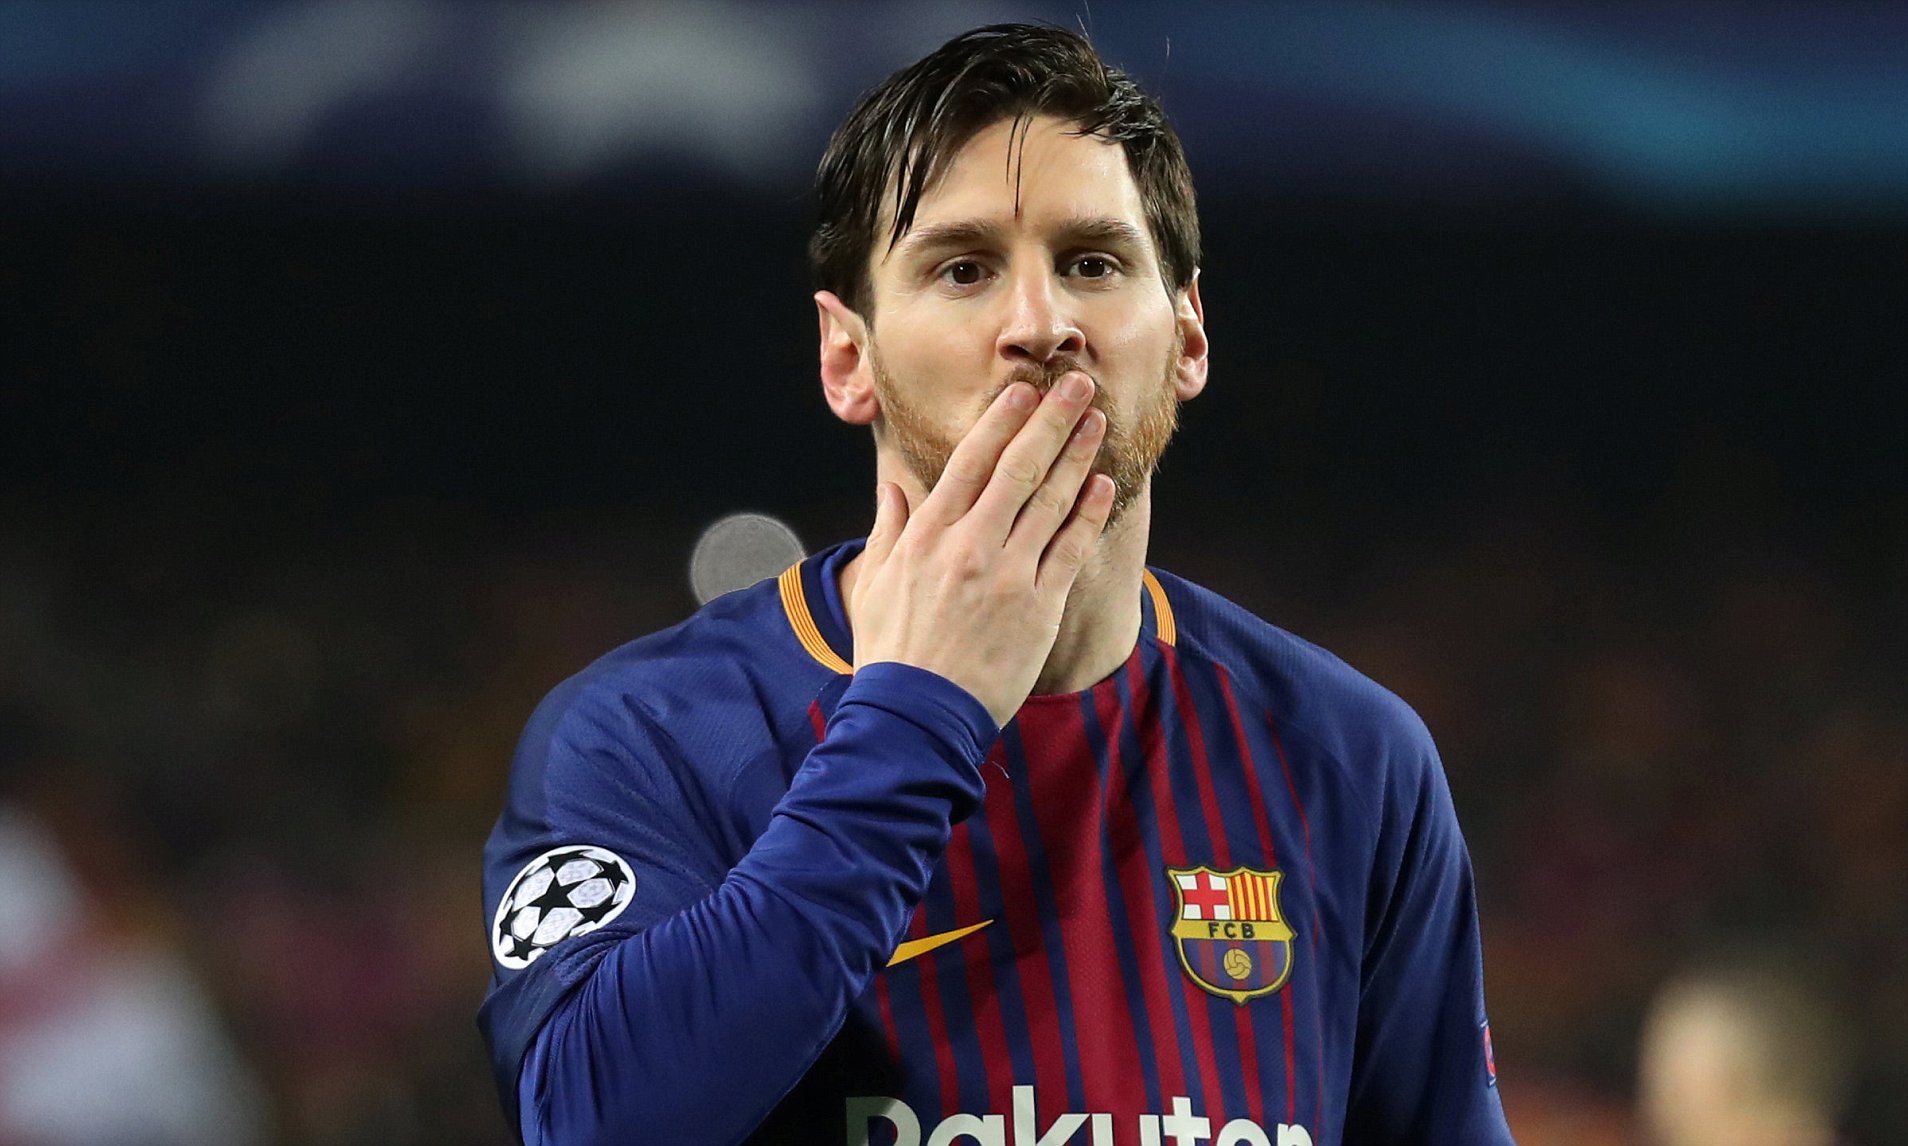 Messi bị bệnh gì lúc nhỏ? Căn bệnh hiểm ác suýt khiến Messi từ giã sự nghiệp thi đấu